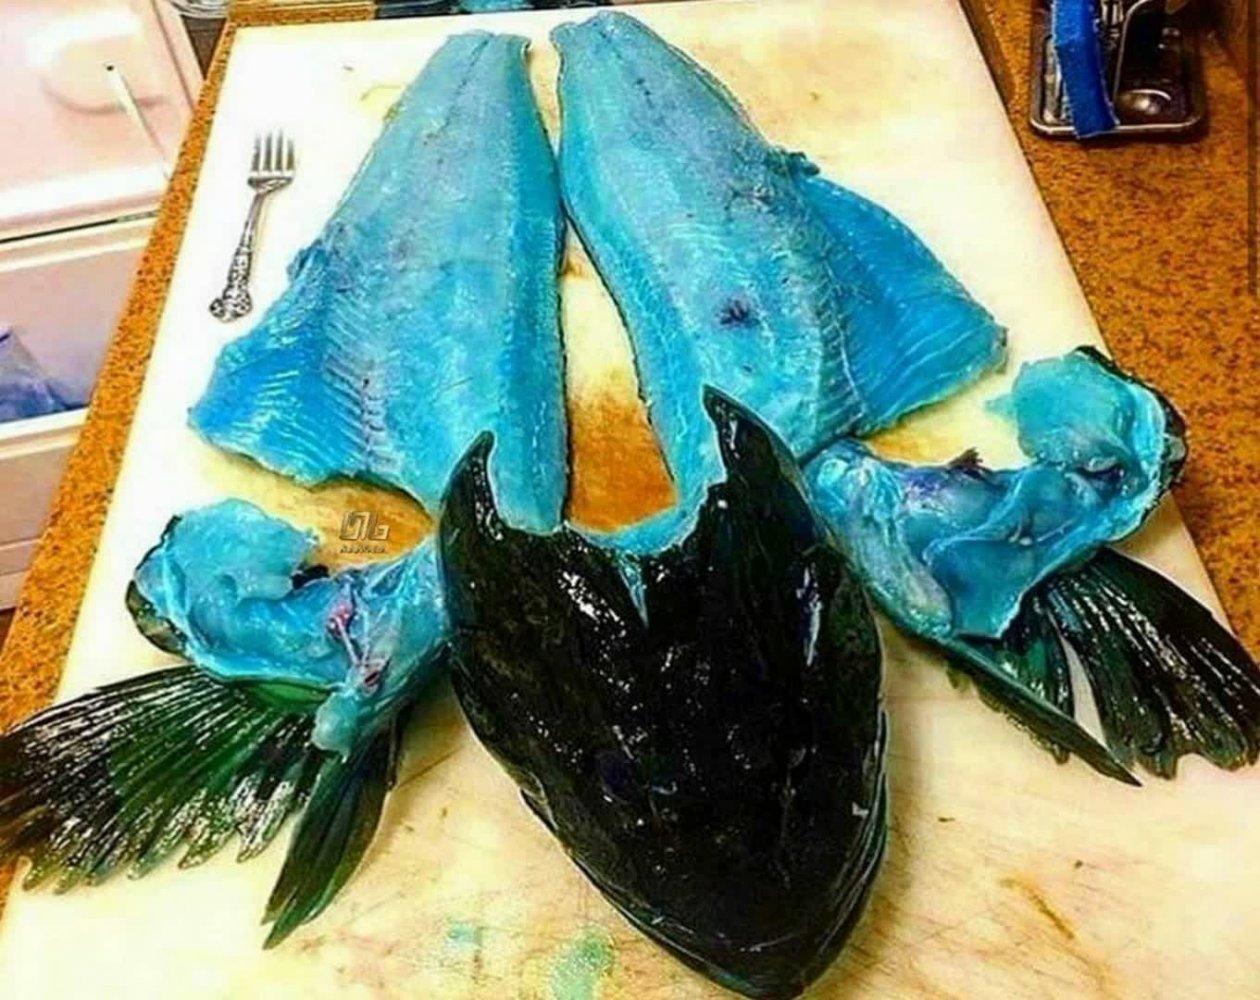 گوشت این ماهی نادر آبی رنگ است